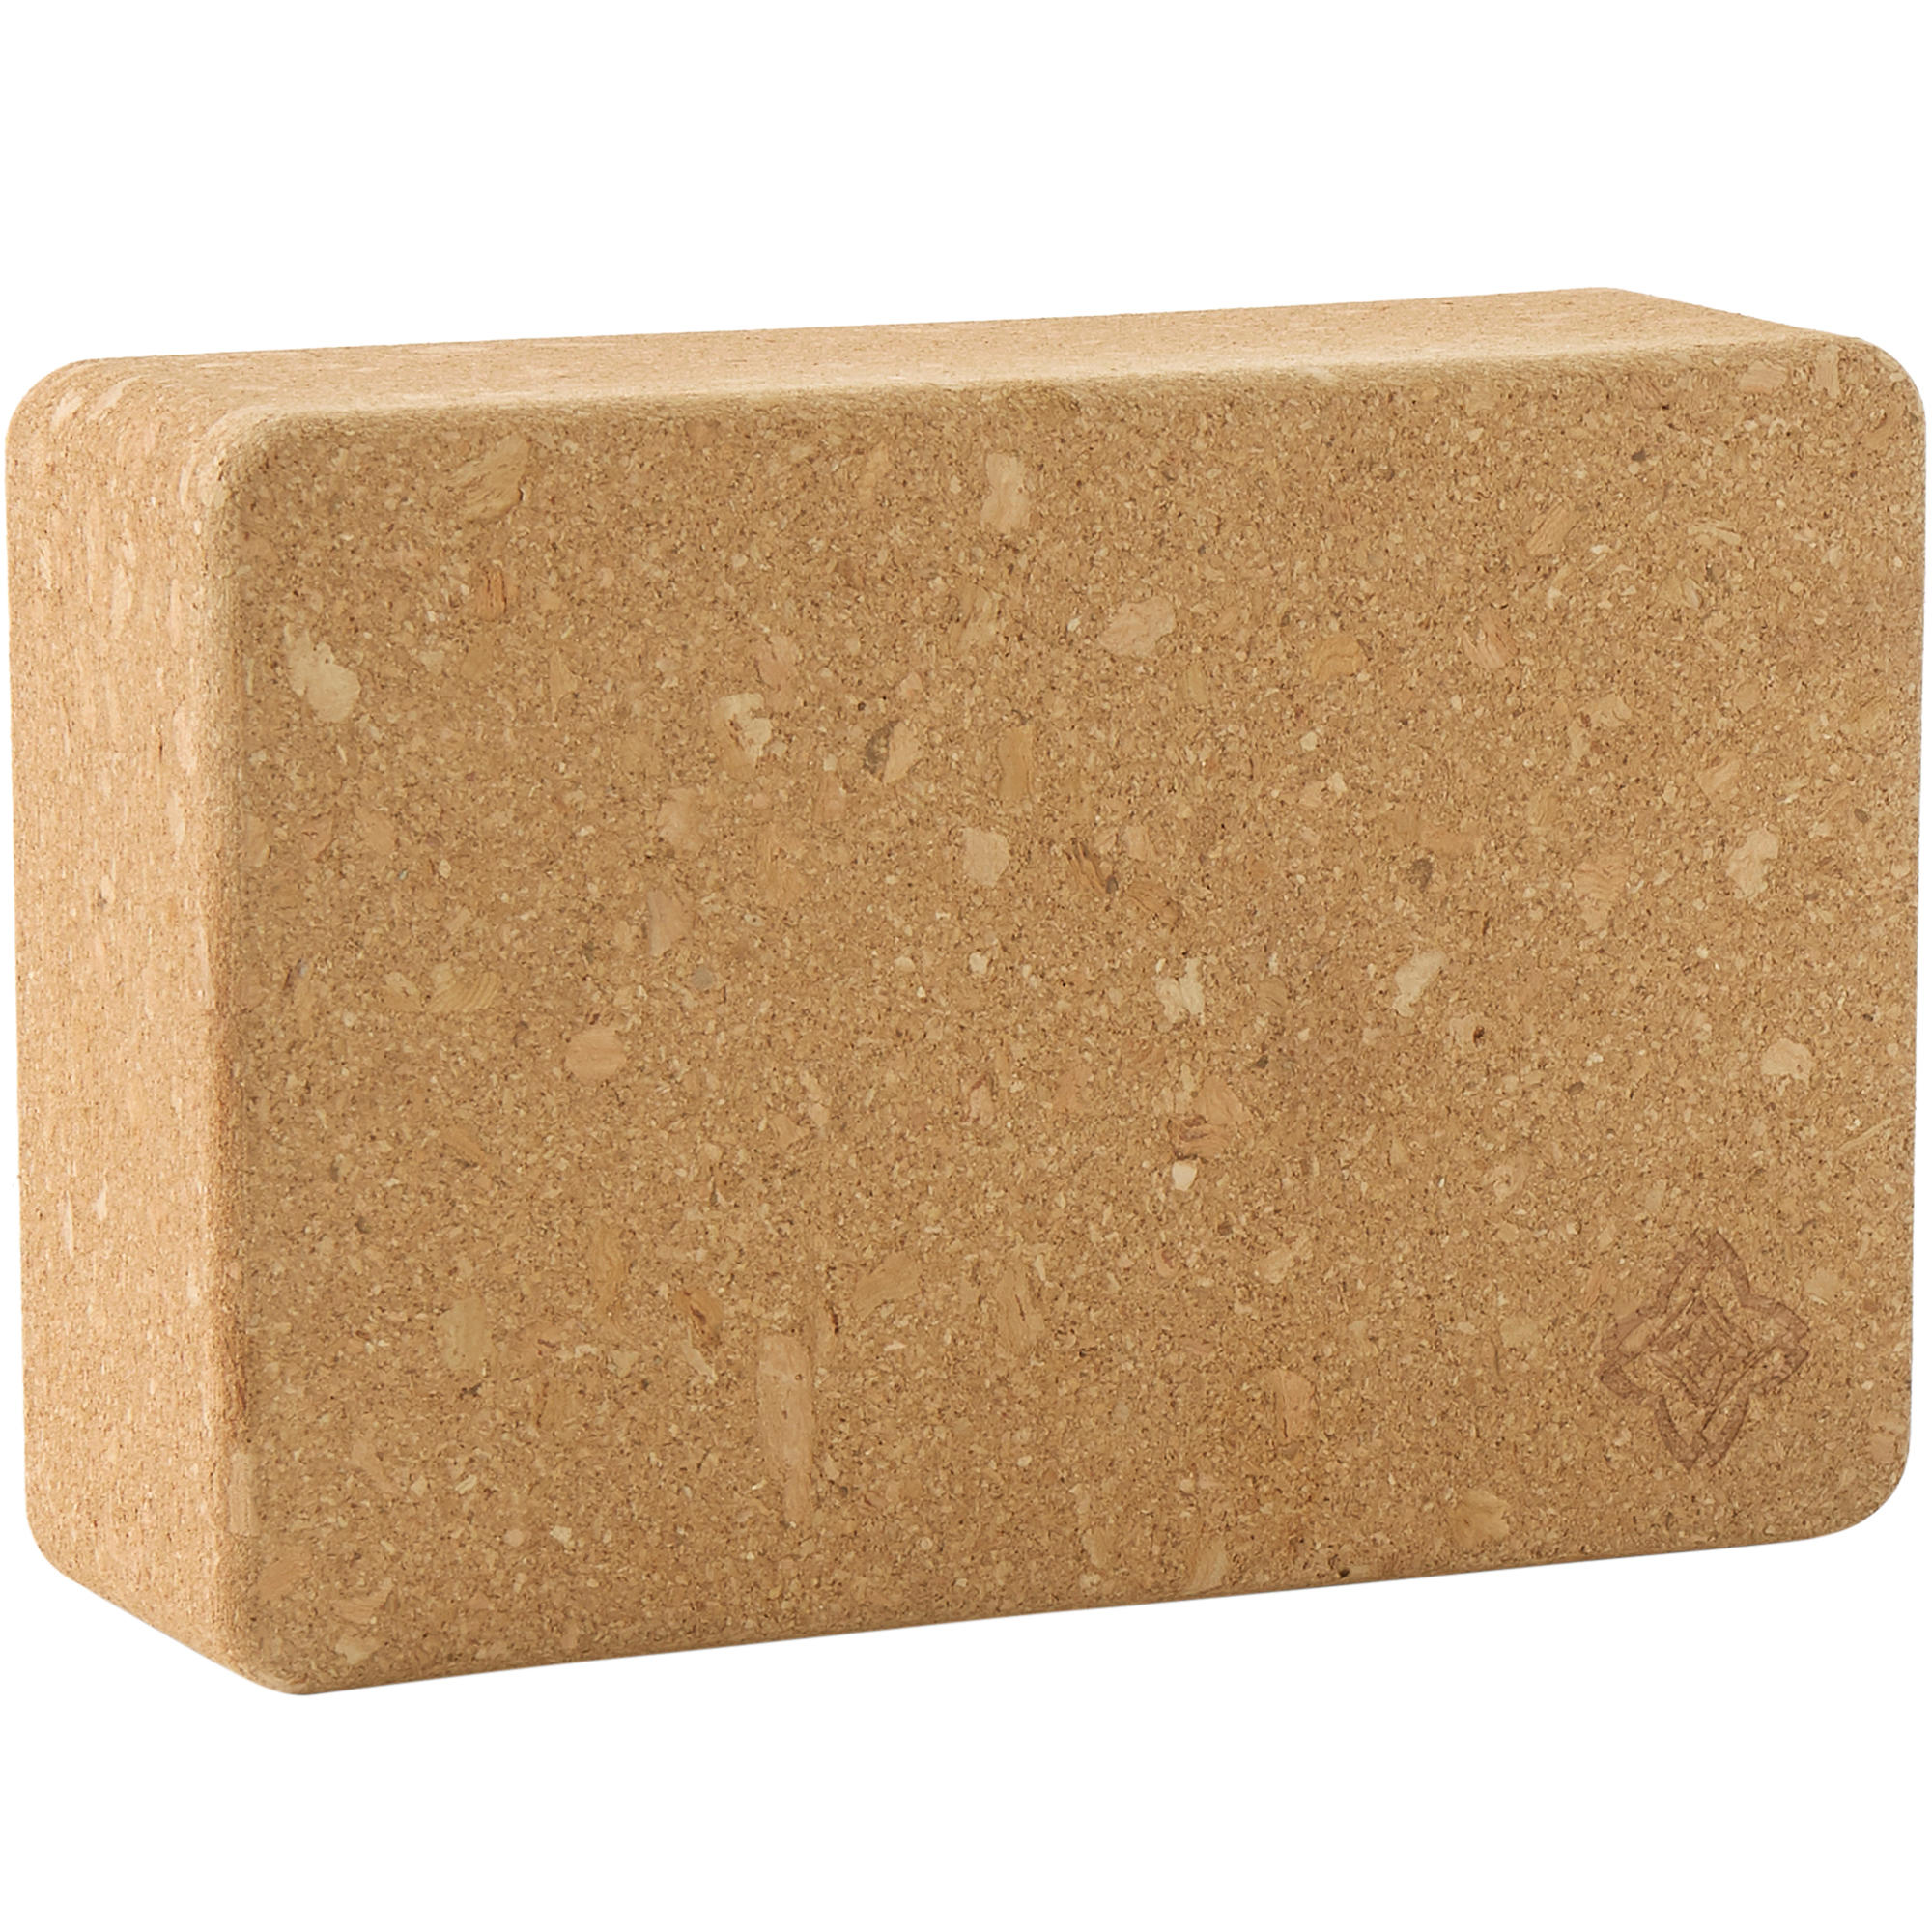 Cork Yoga Block Onda Brick By Zen Yoga Wedge